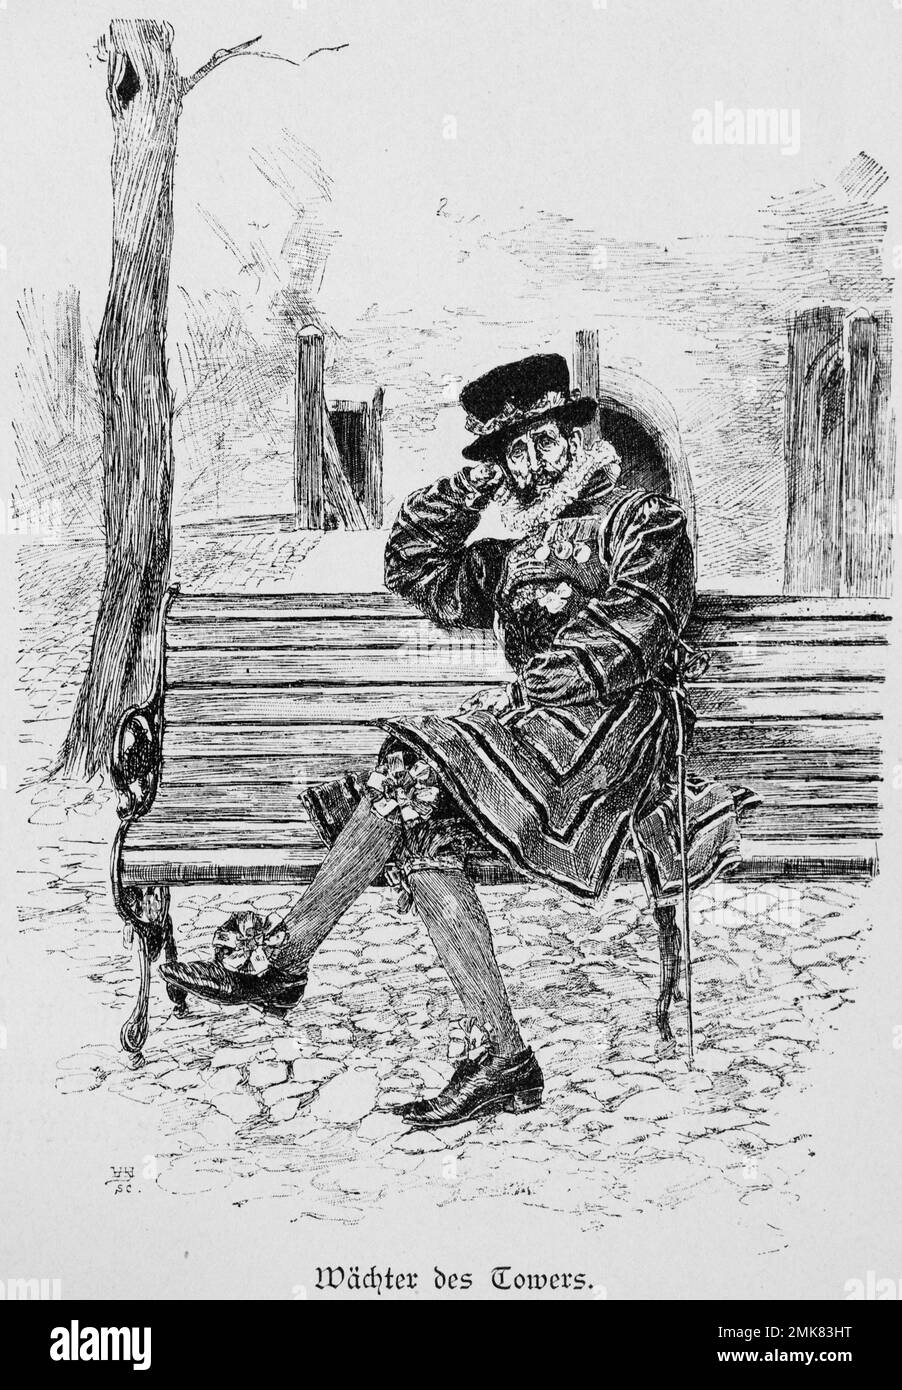 Beefeater assis, gardien de la Tour, Palais Royal, Londres, illustration historique, gravure en bois, 19th siècle Banque D'Images